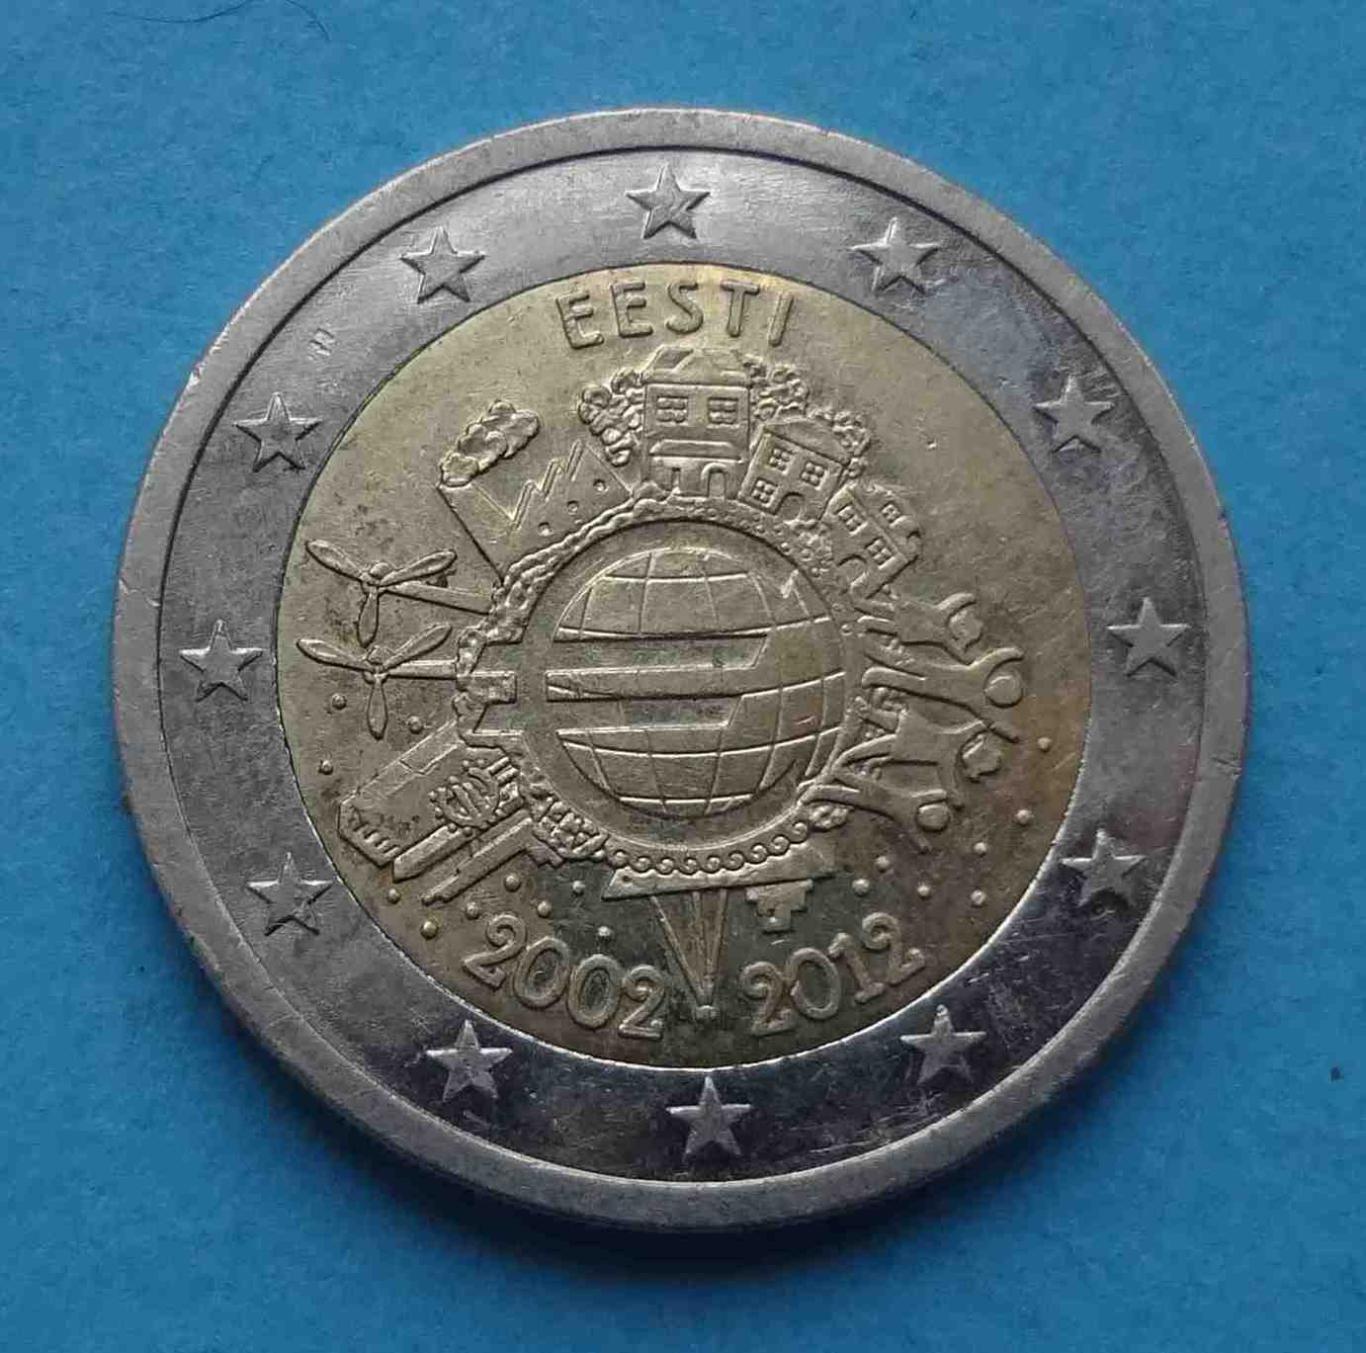 2 Евро 2002-2012 года Эстония (20)